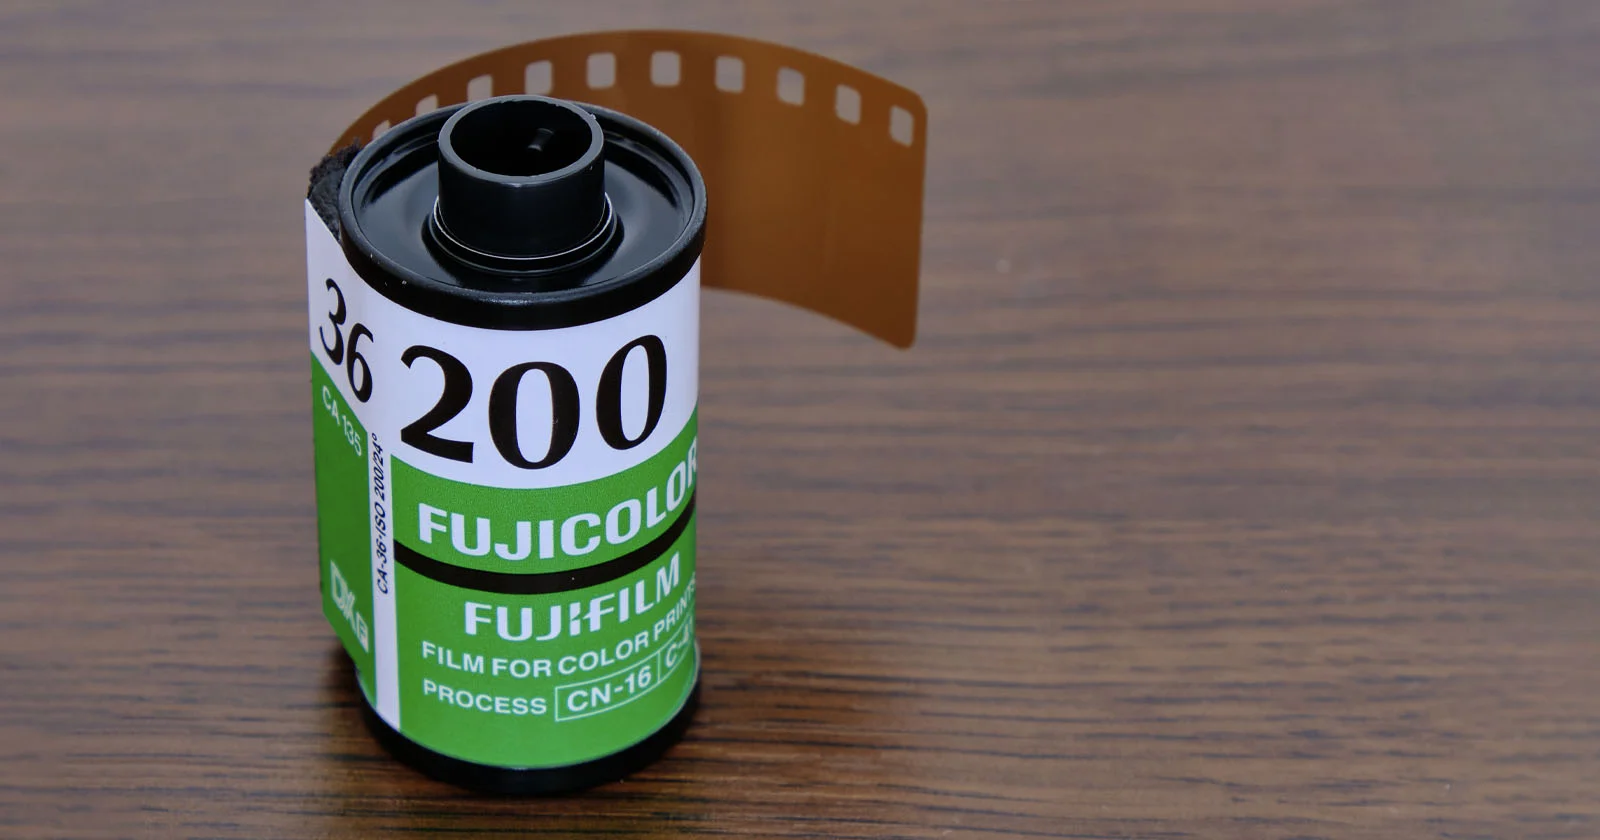 Fujifilm, Ürün Fiyatlarını Nisan 2022'de %60'a Kadar Yükseltecek mi? FUJIFILM